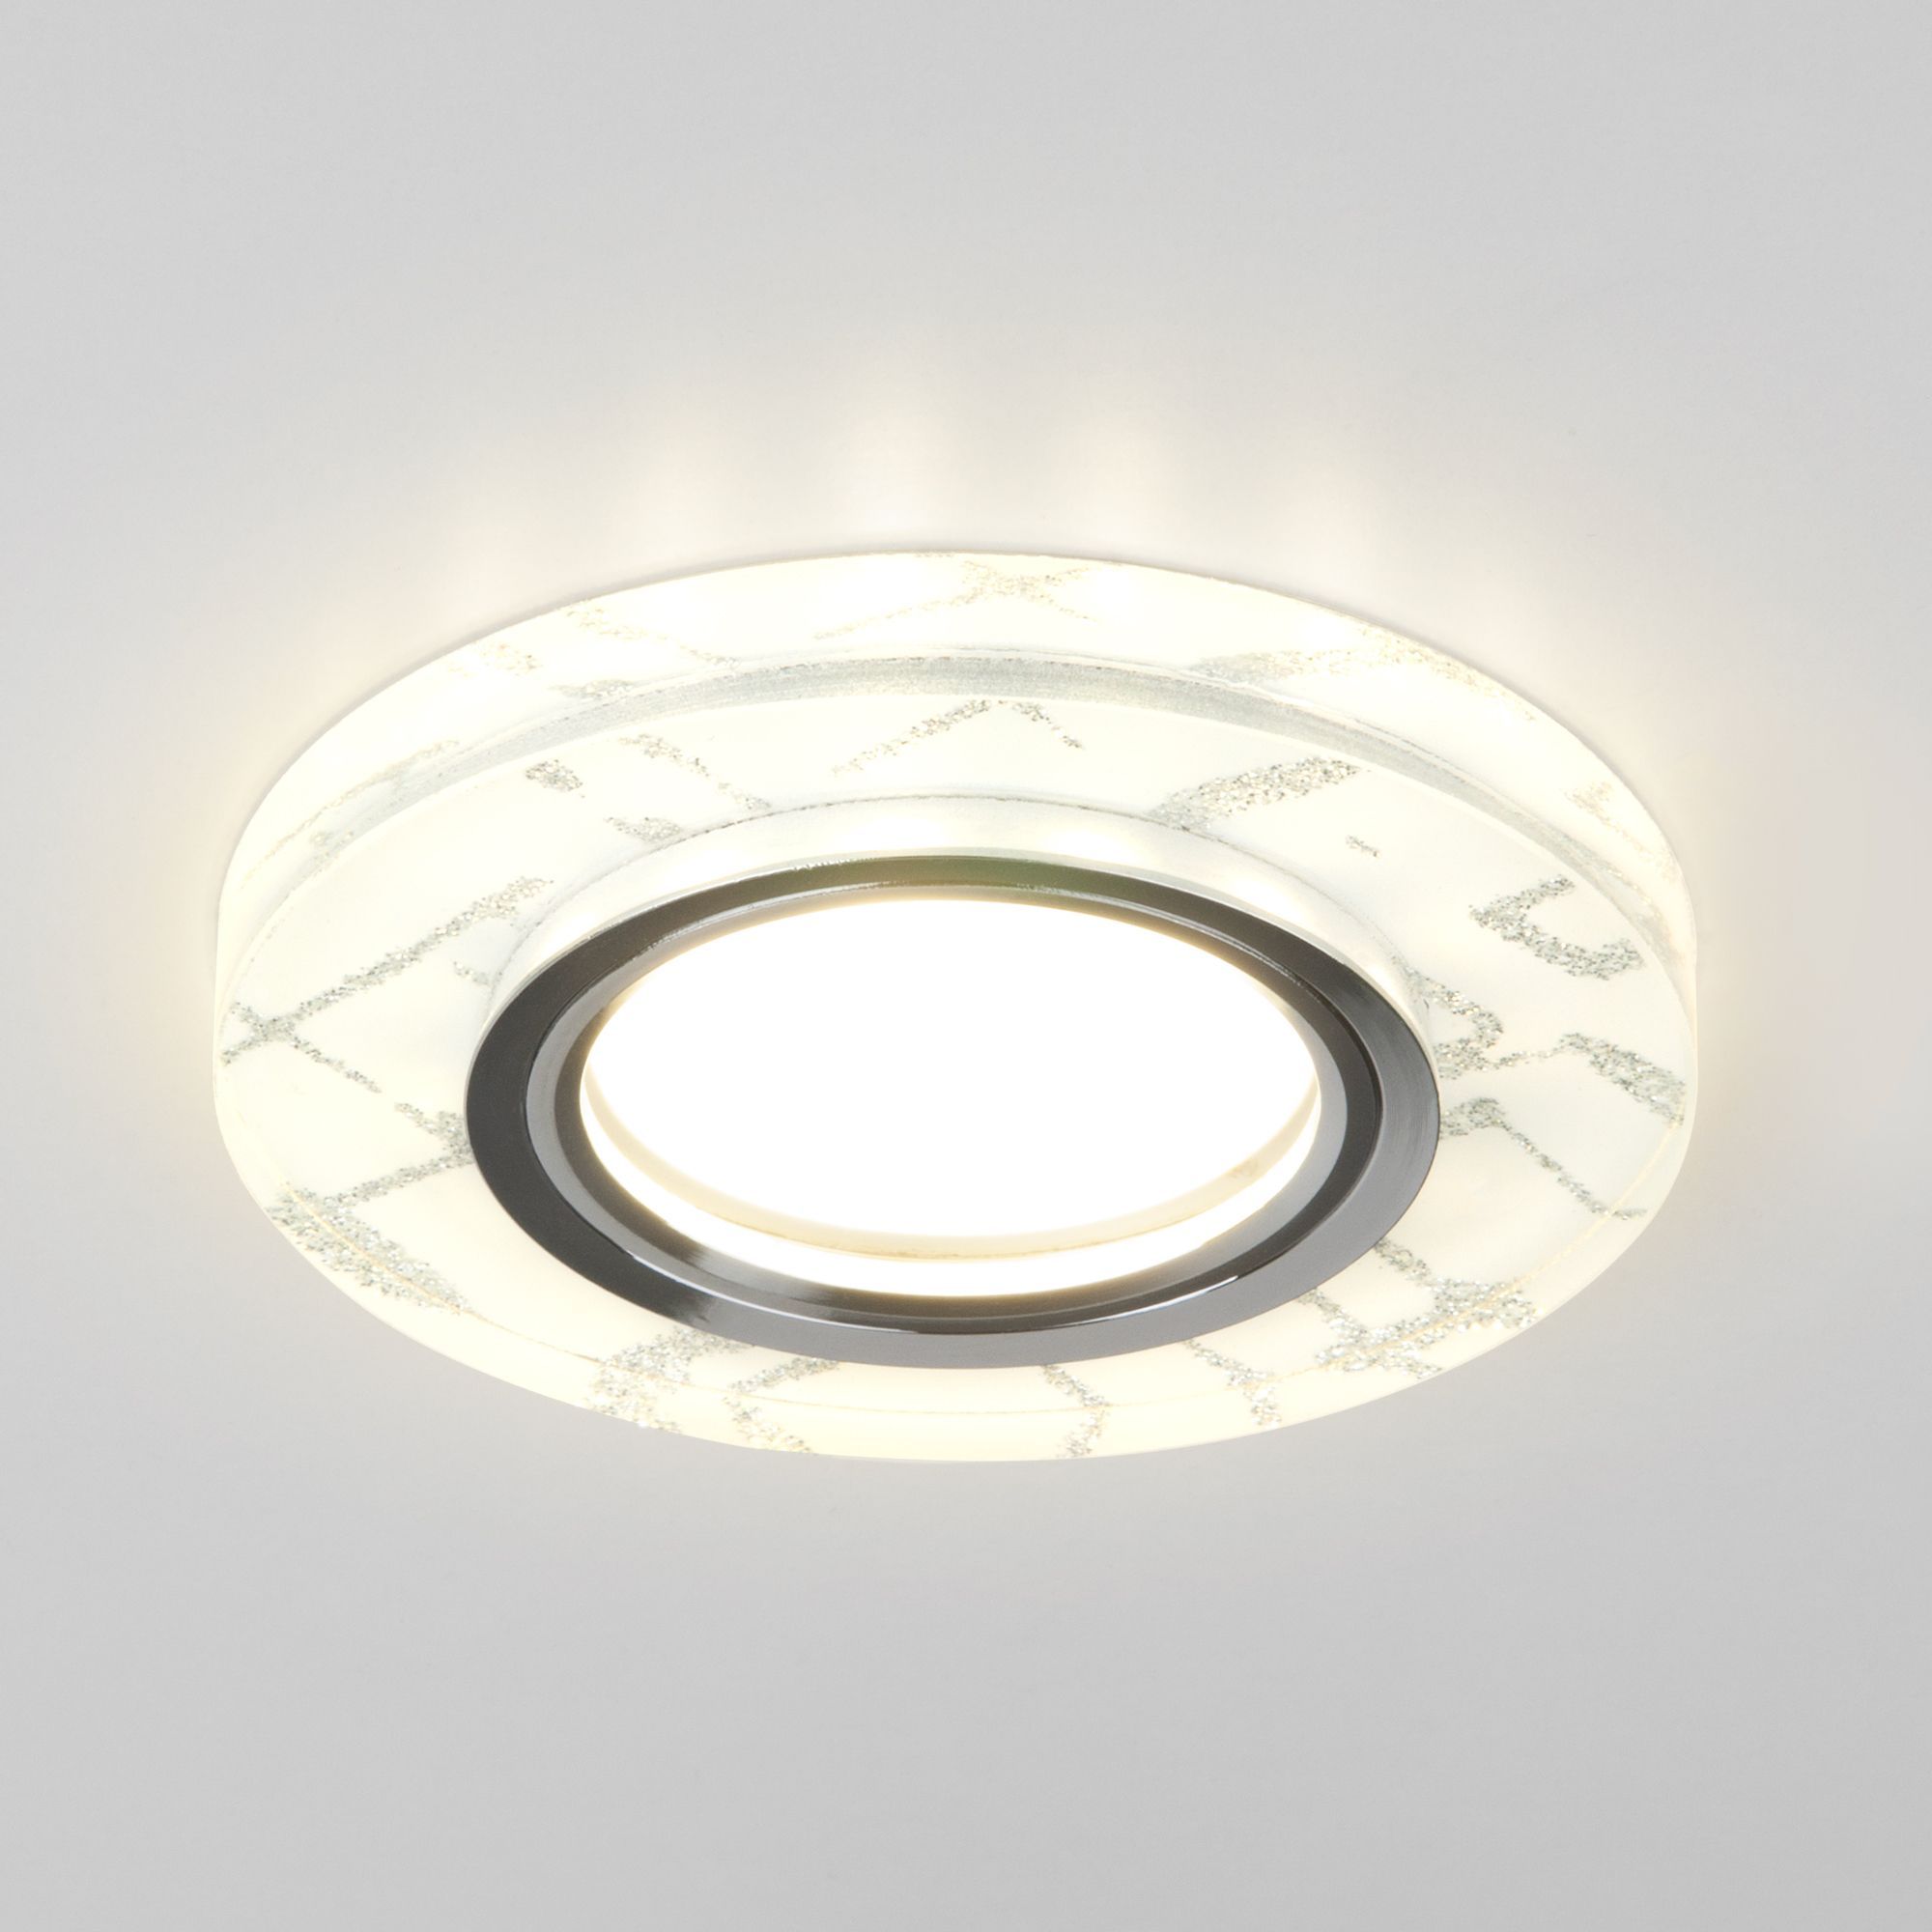 Встраиваемый точечный светильник с подсветкой 8371 MR16 WH/SL белый/серебро